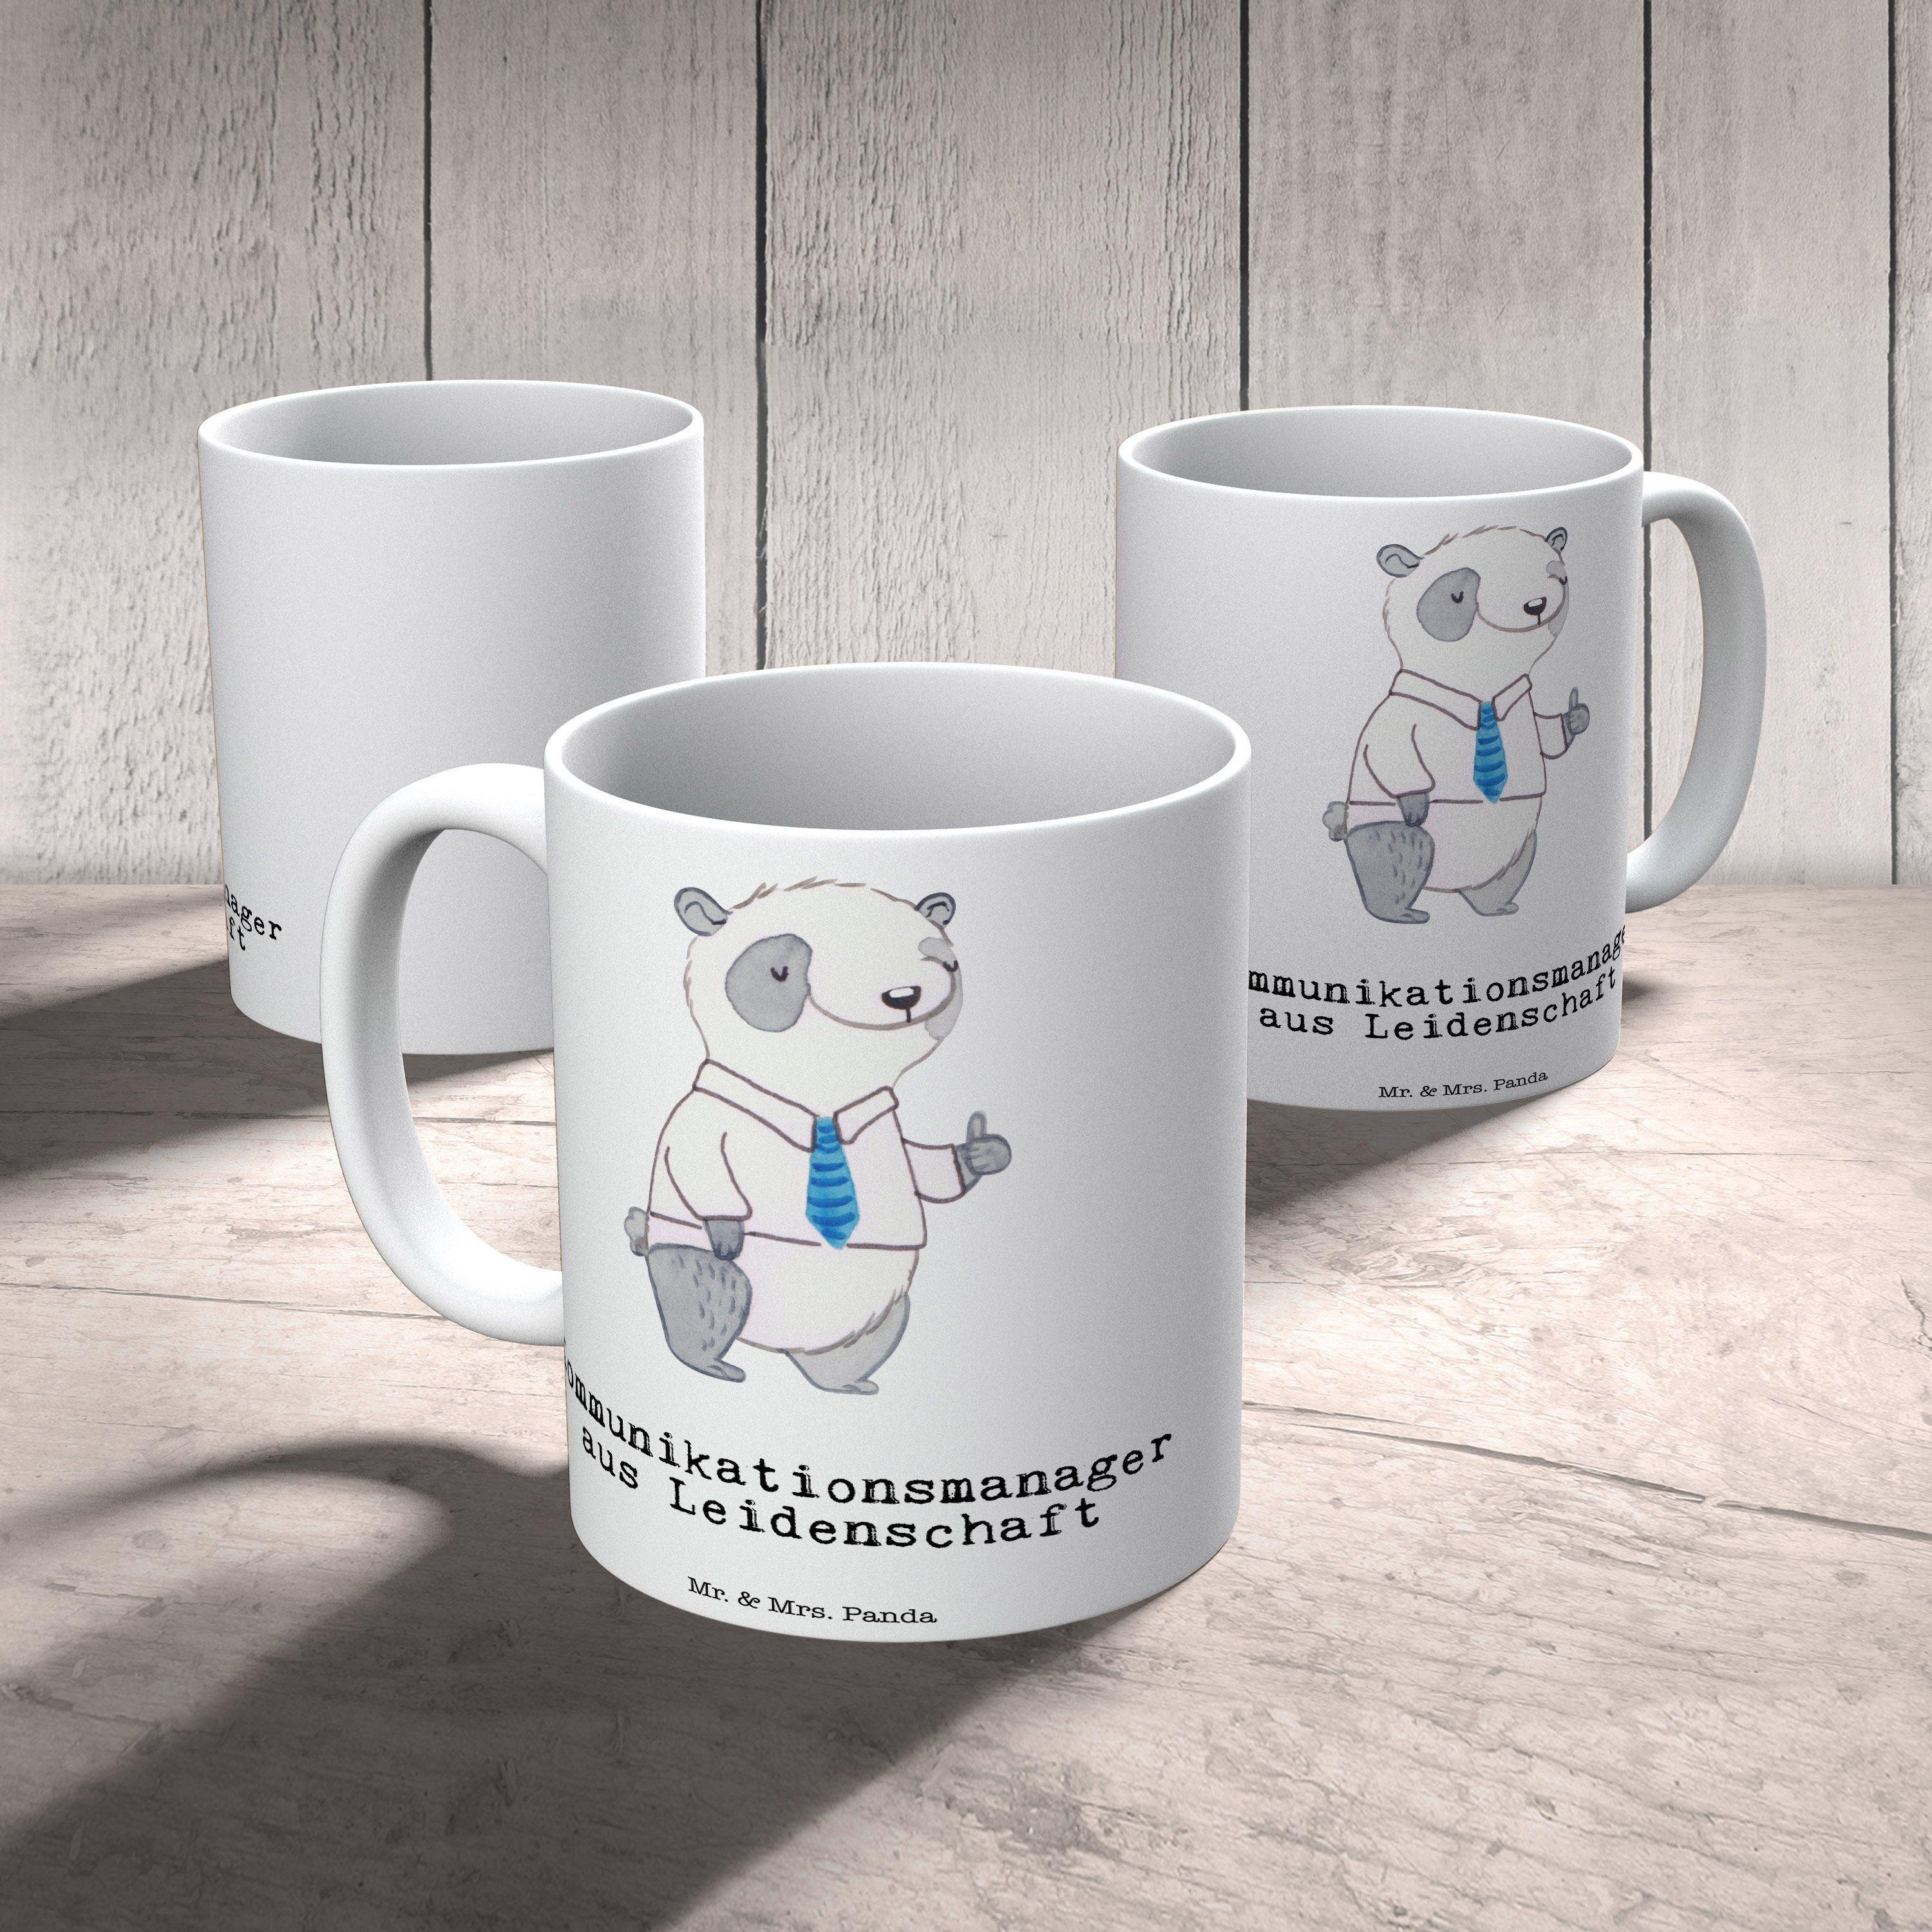 Tasse & Leidenschaft - Panda Mrs. - Mr. Weiß Keramik Kaff, Kommunikationsmanager Geschenk, Firma, aus